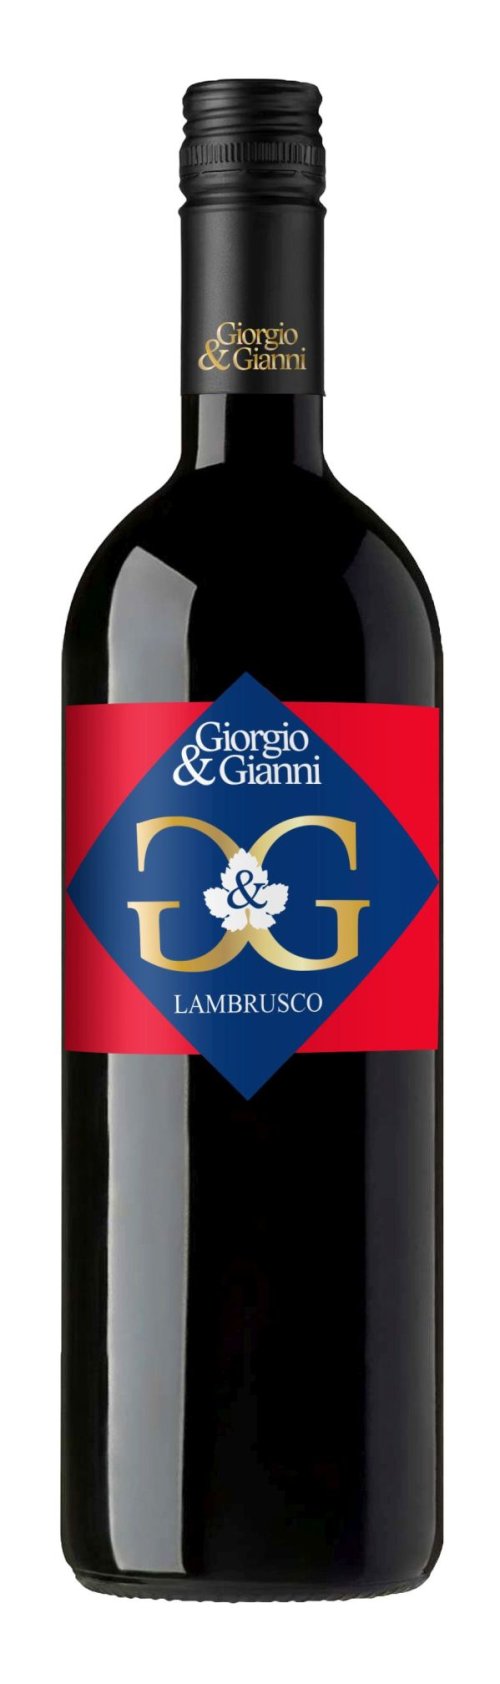 Giorgio & Gianni Lambrusco Dell´Emilia 0,75L, IGT, r2015, cr, plsl, sc